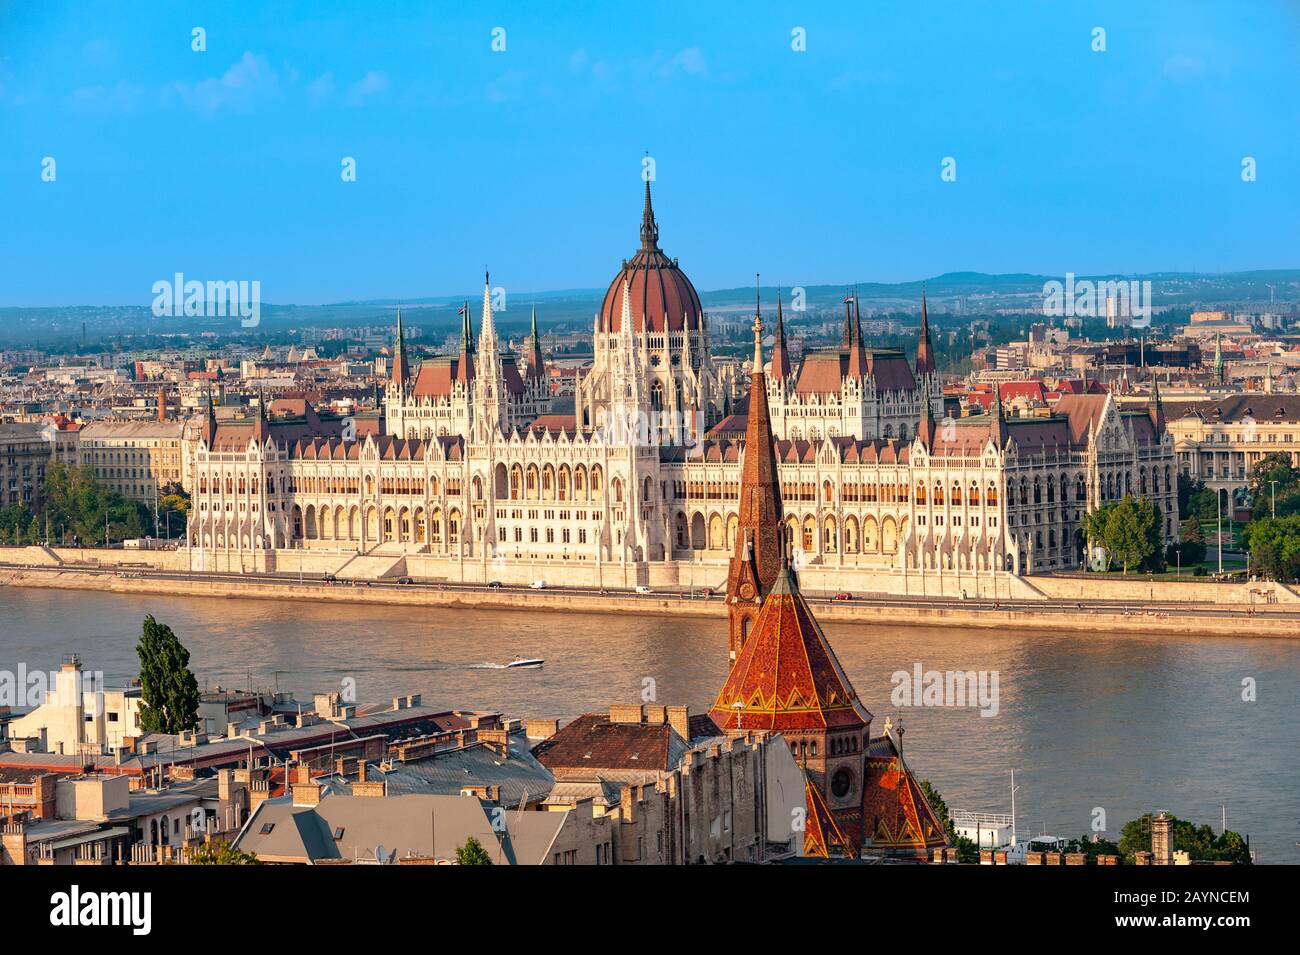 Parlement hongrois s'appuyant sur les rives du Danube, Budapest, Hongrie Banque D'Images